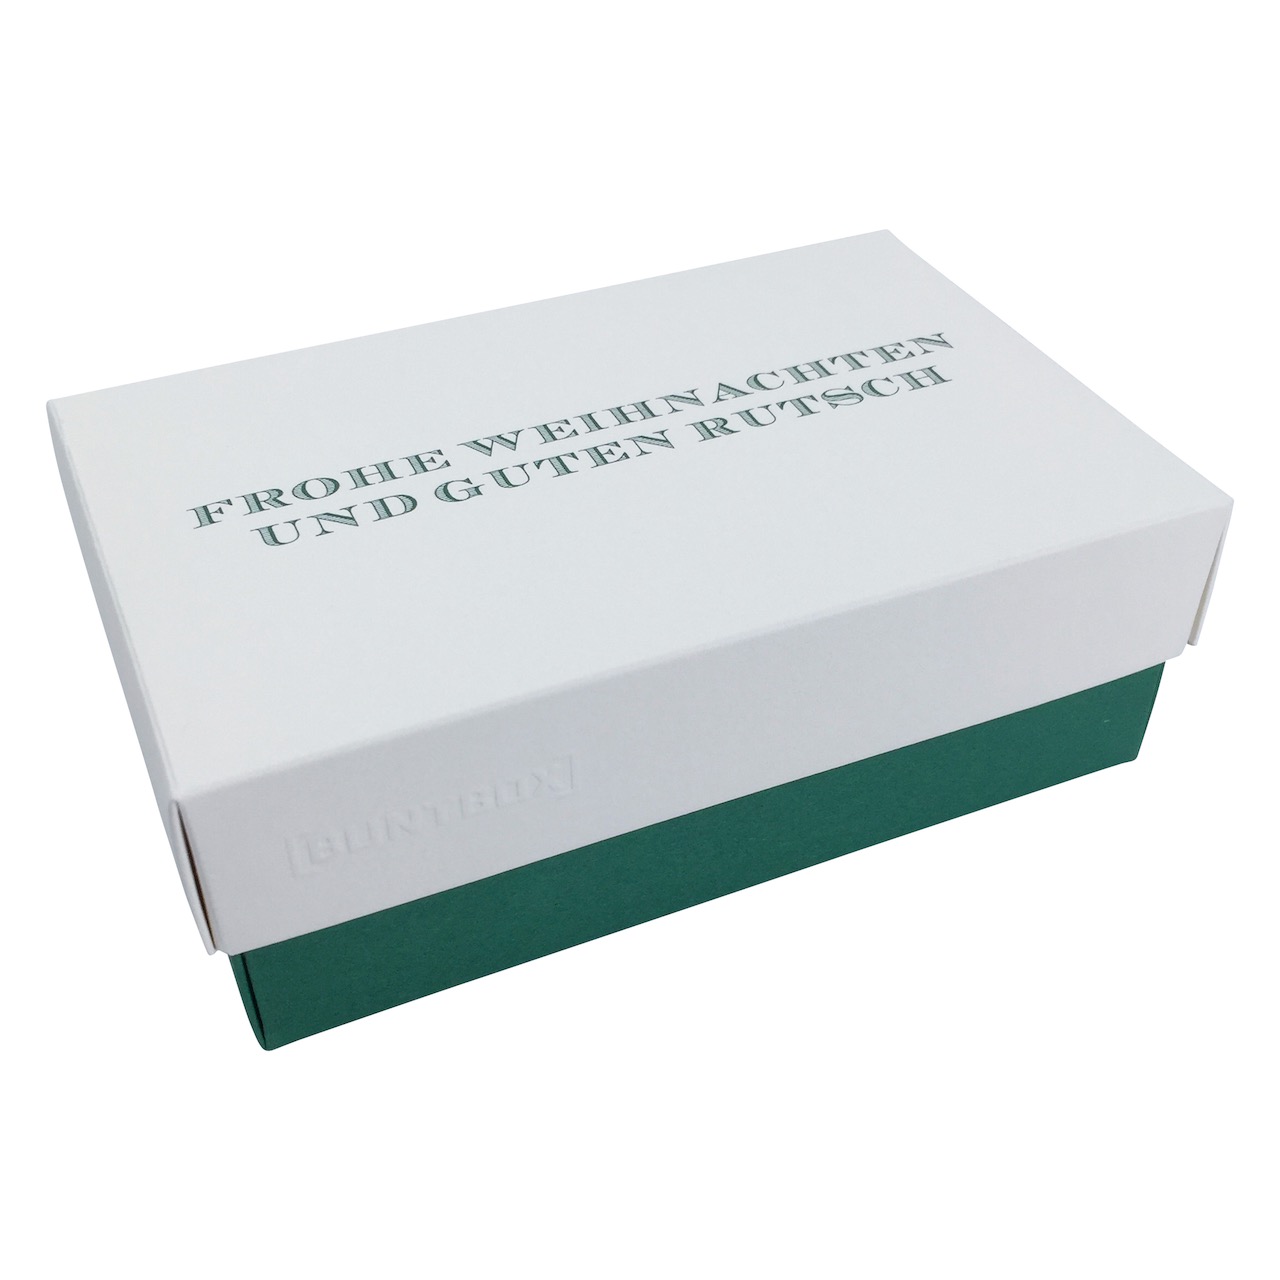 Buntbox M Fine Paper Weihnachten Rutsch in Champagner-Emerald